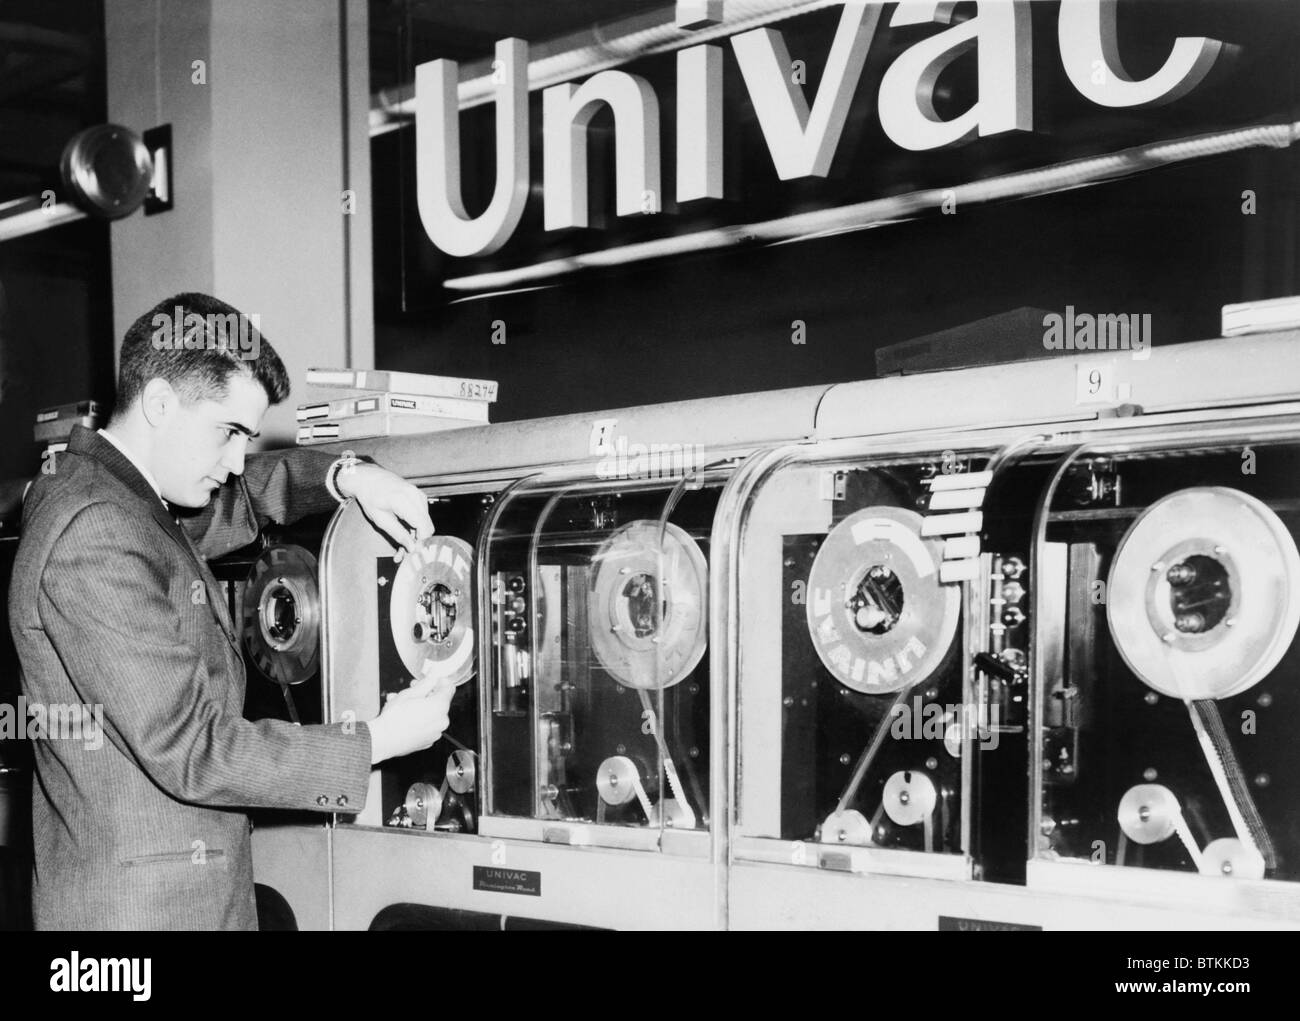 Univac fut le premier ordinateur conçu pour un usage commercial et 46 ont été construits et installés dans les années 1950. Conçu par J. Presper Eckert et John Mauchly et le nom